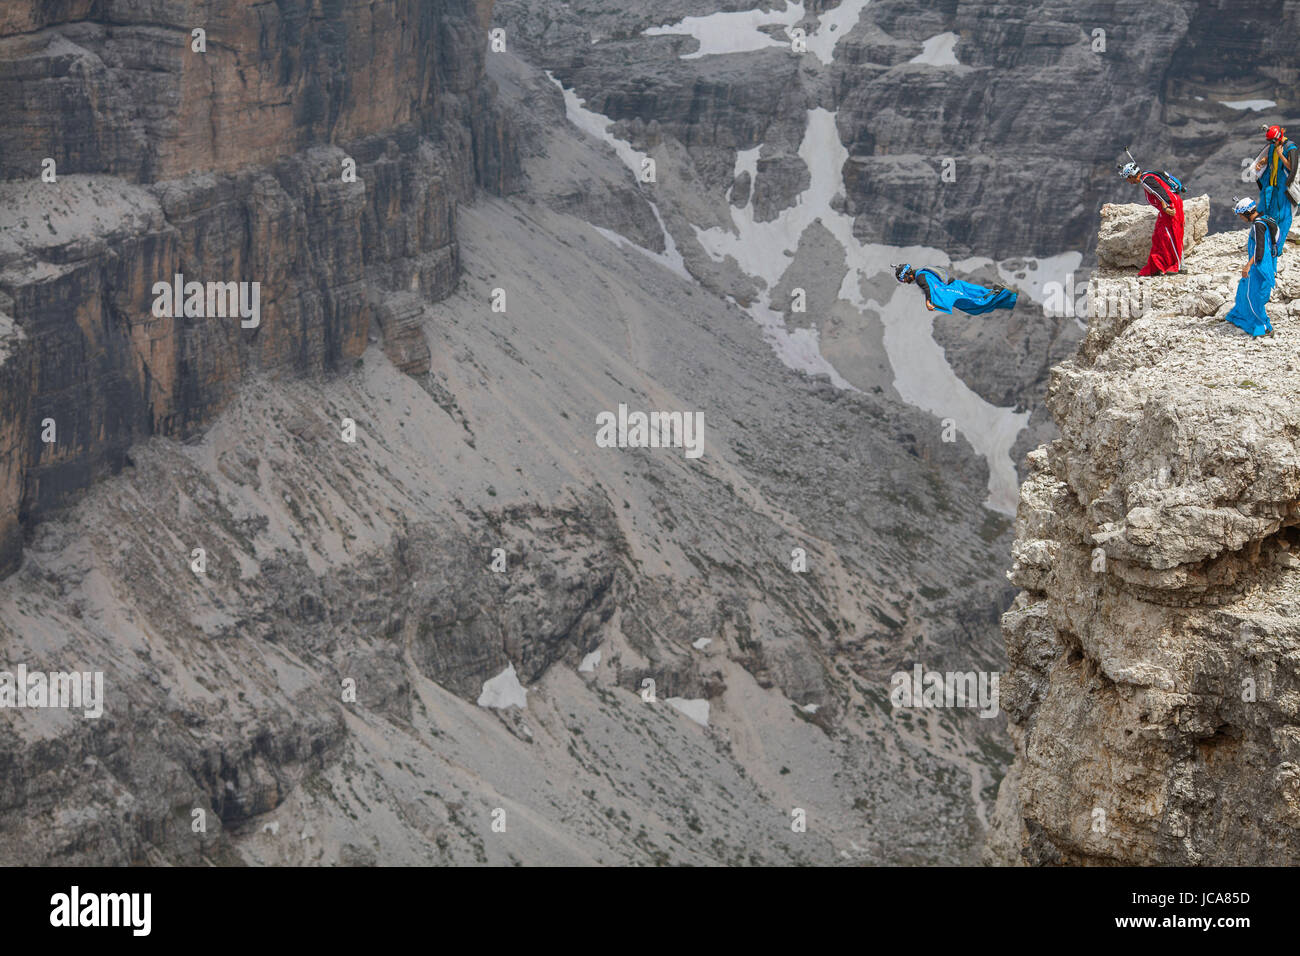 Eine Gruppe von base-Jumper stehen bereit, wie ein Pilot in der Sass Pordoi-Region der Dolomiten Flug dauert. Italien. Stockfoto